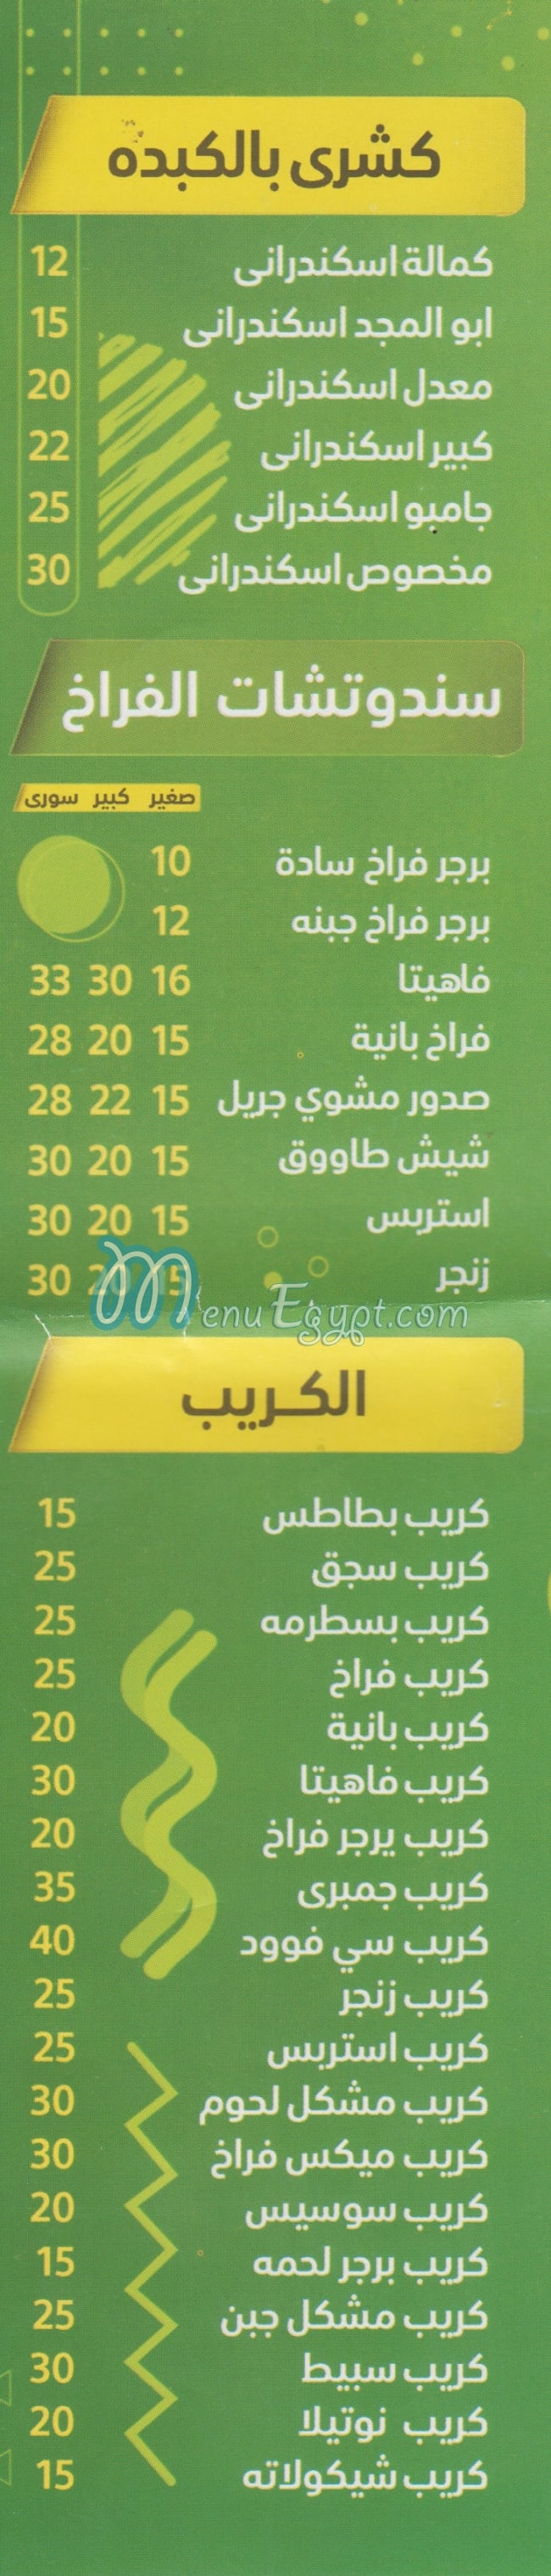 Koshary Abo El Magd menu Egypt